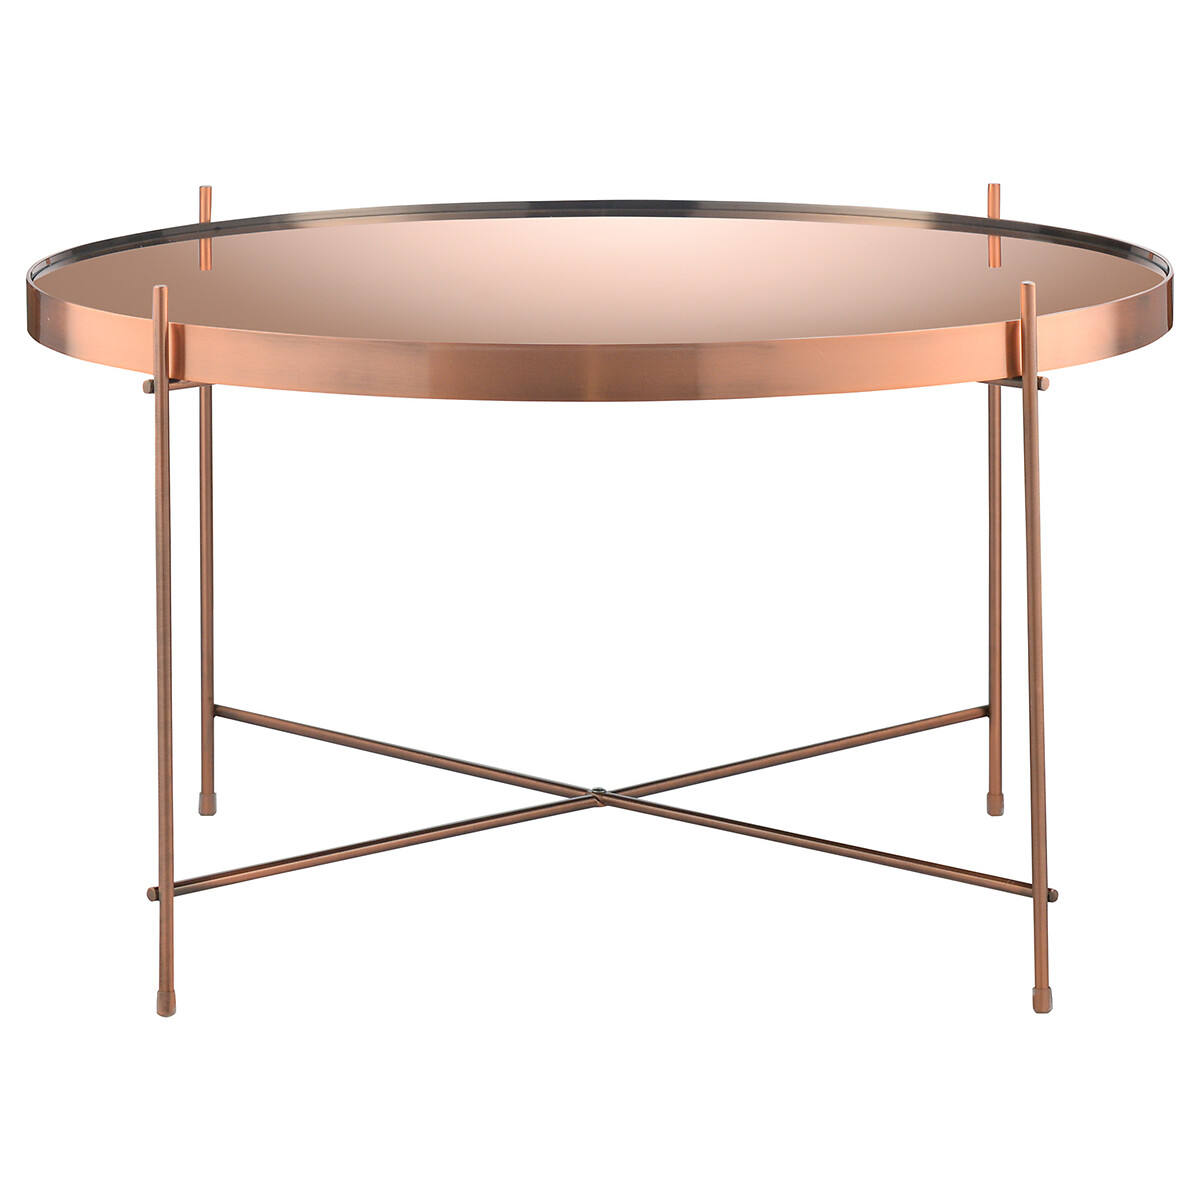 Стол Josen 644 единый размер розовый стол josen 120х60 см единый размер золотистый